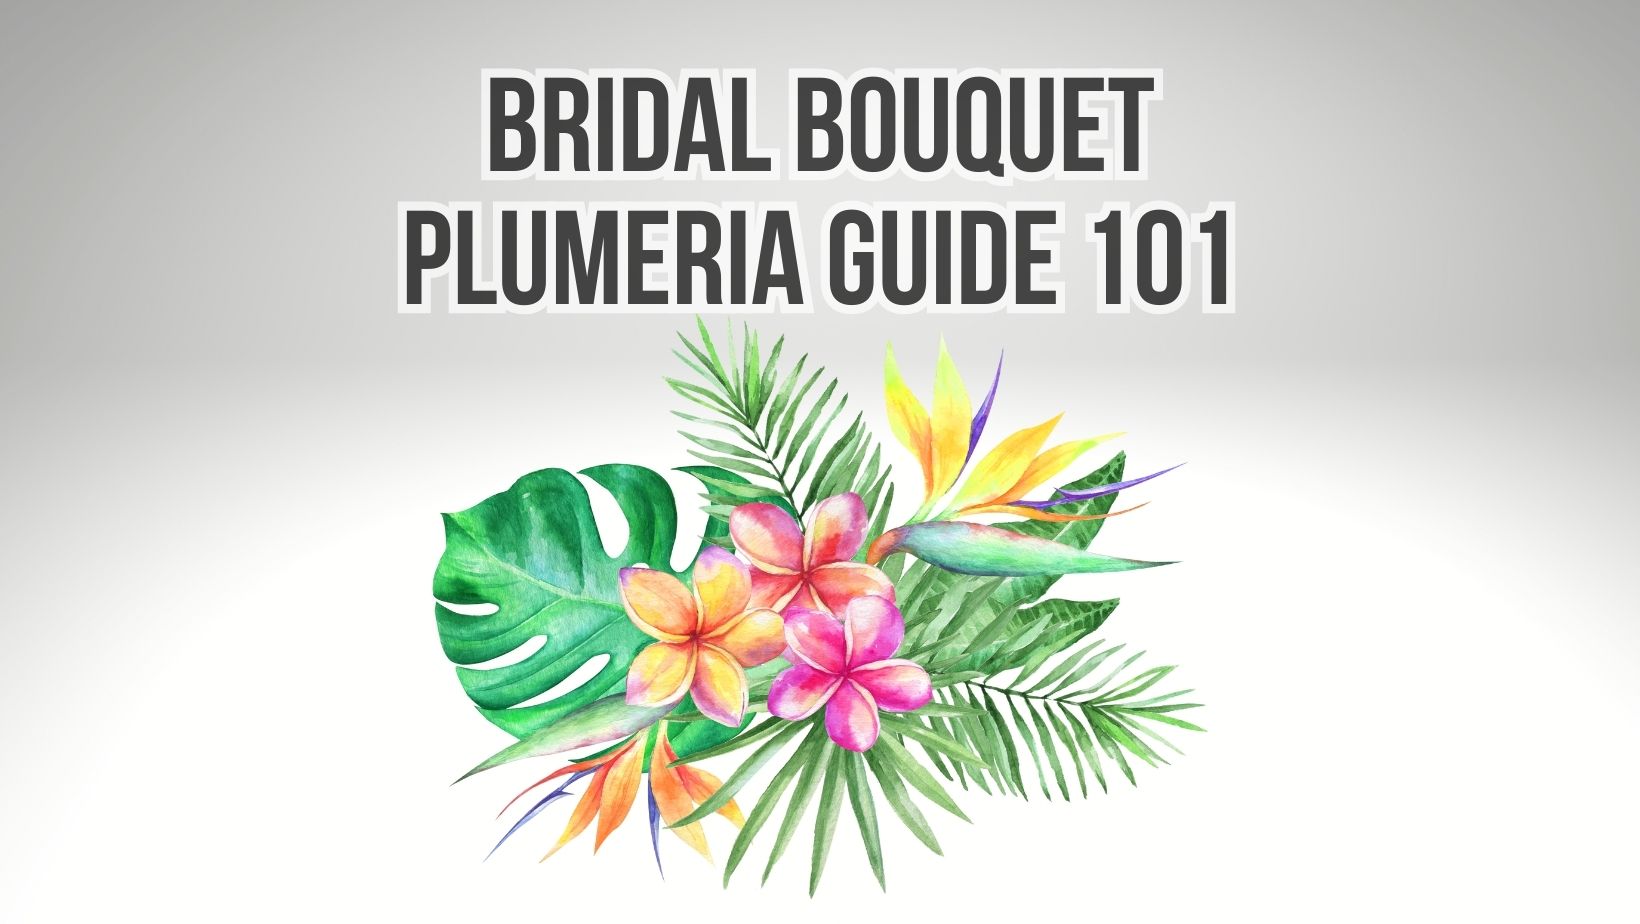 Bridal Bouquet Plumeria Guide 101 - Plumeria Guy